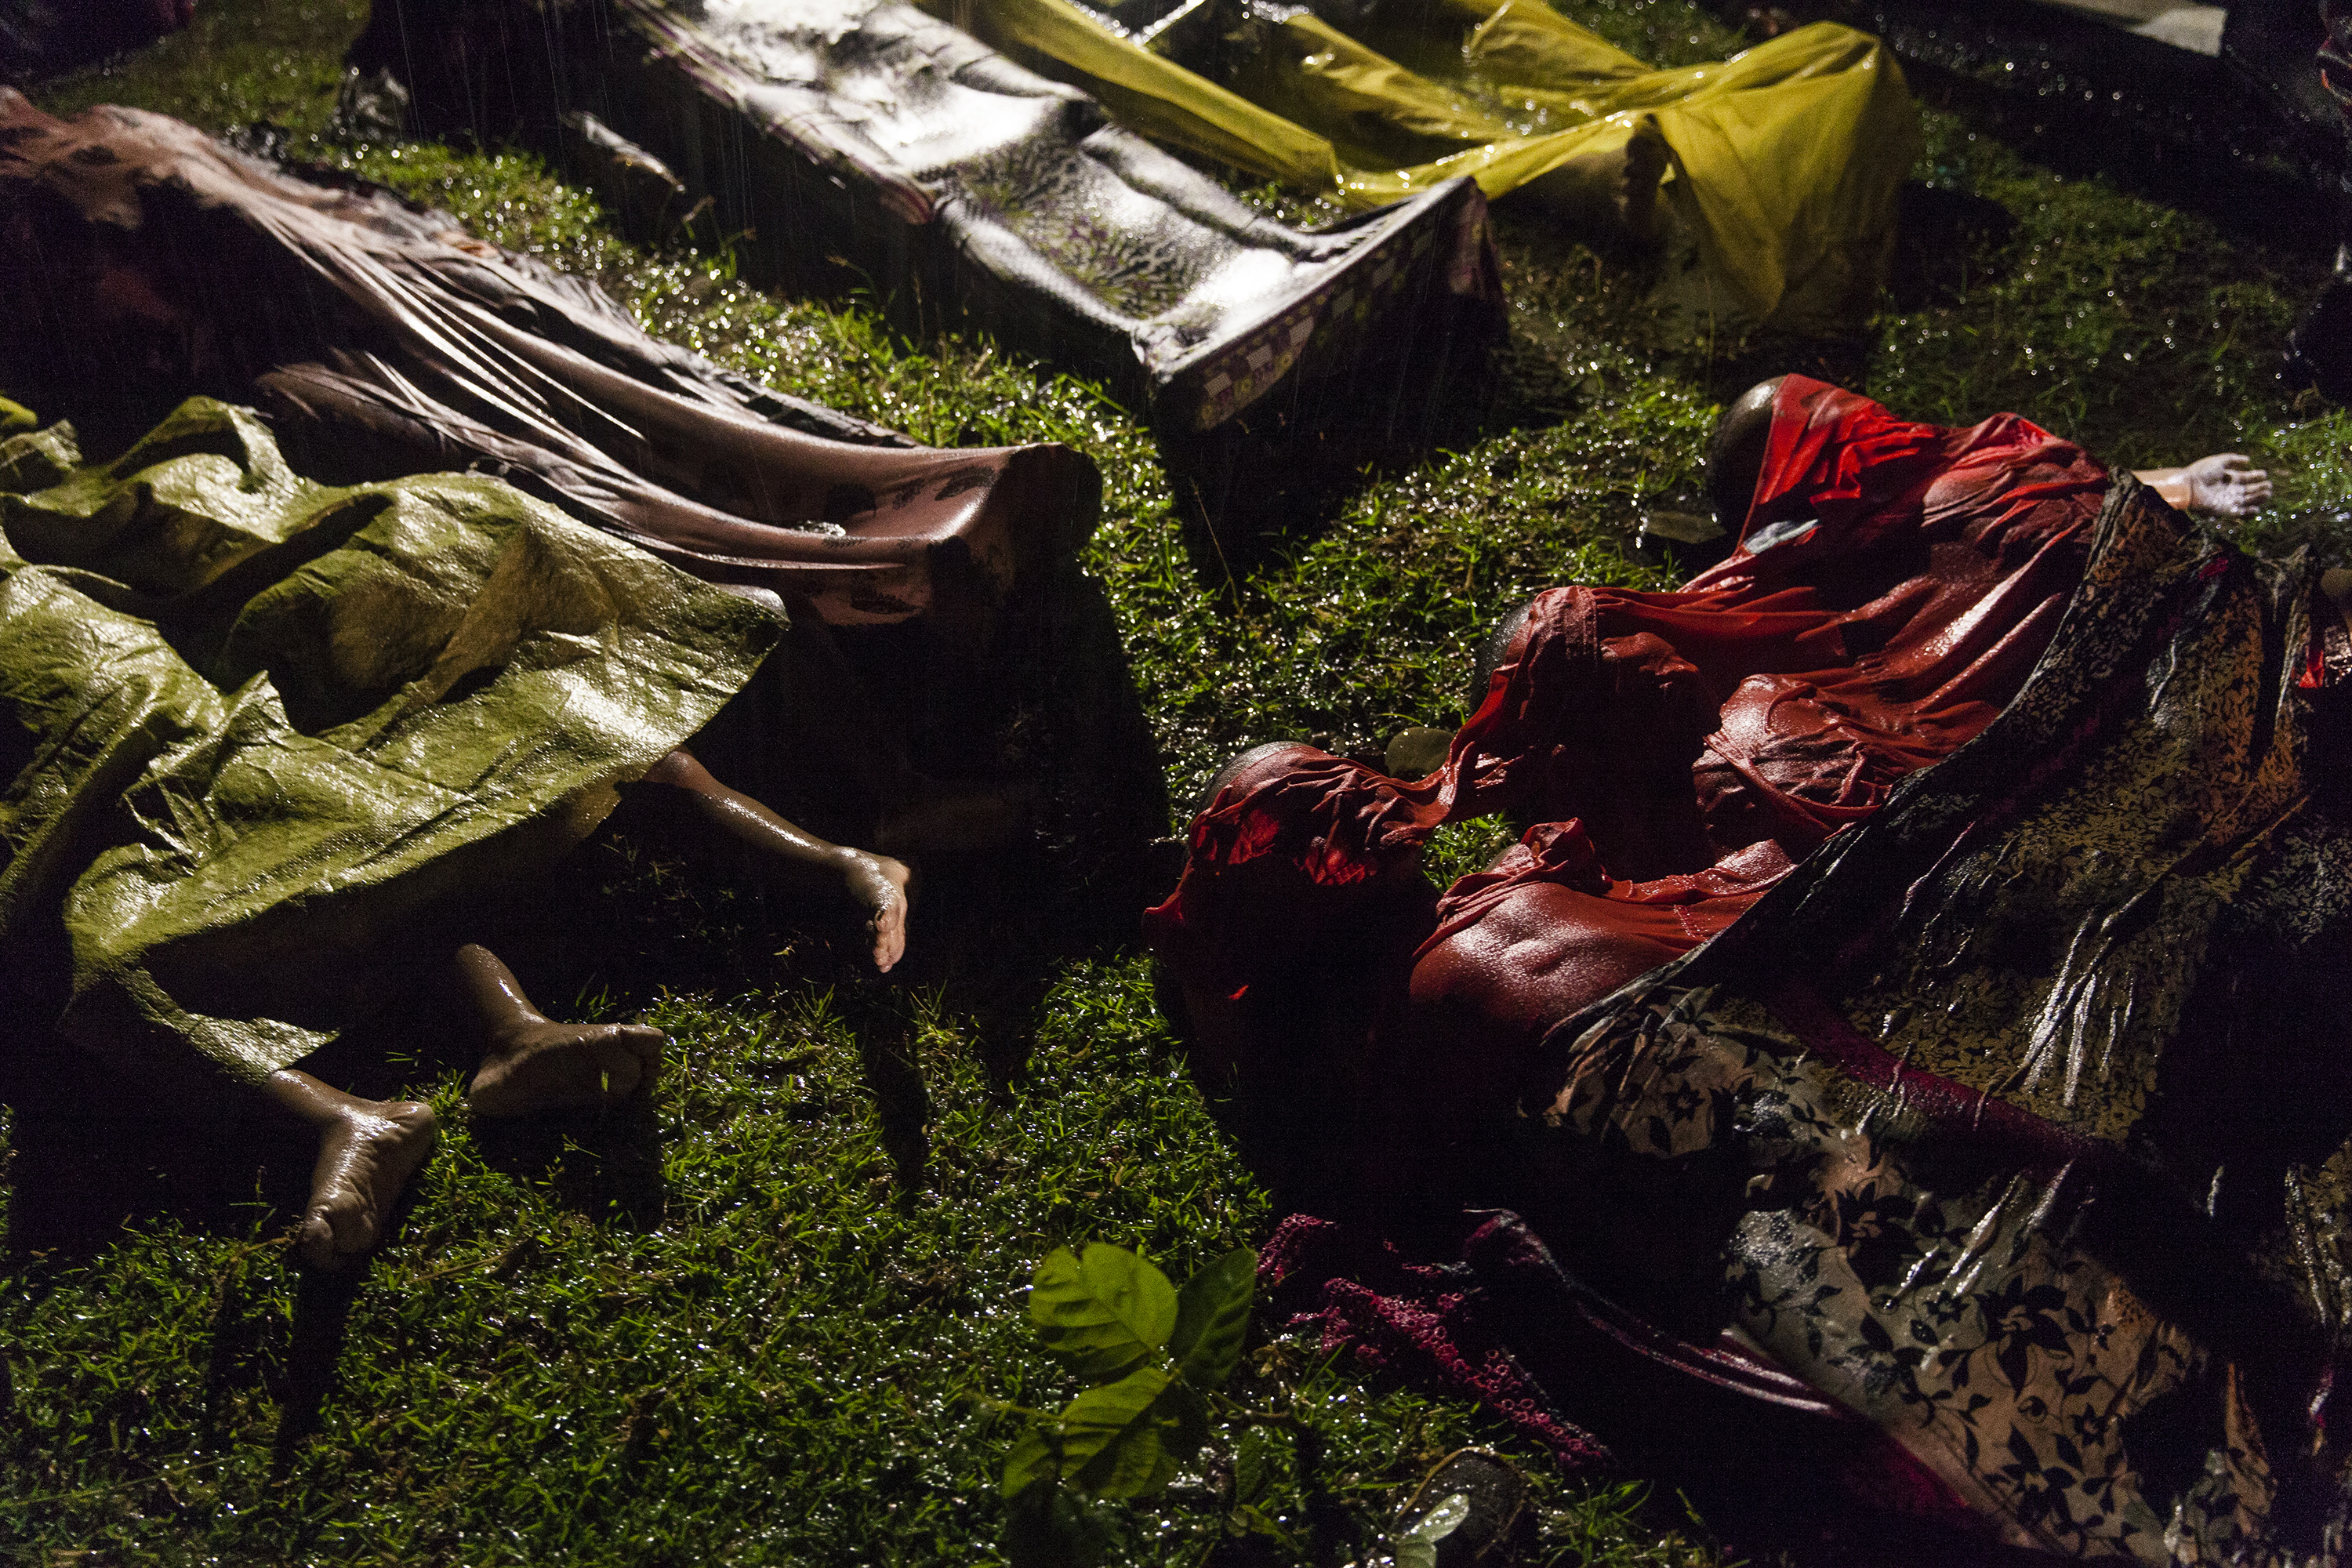 Снимка на Патрик Браун ”Кризата на рохингите” номинирана за първа награда на конкурса на ”Уърлд прес” в